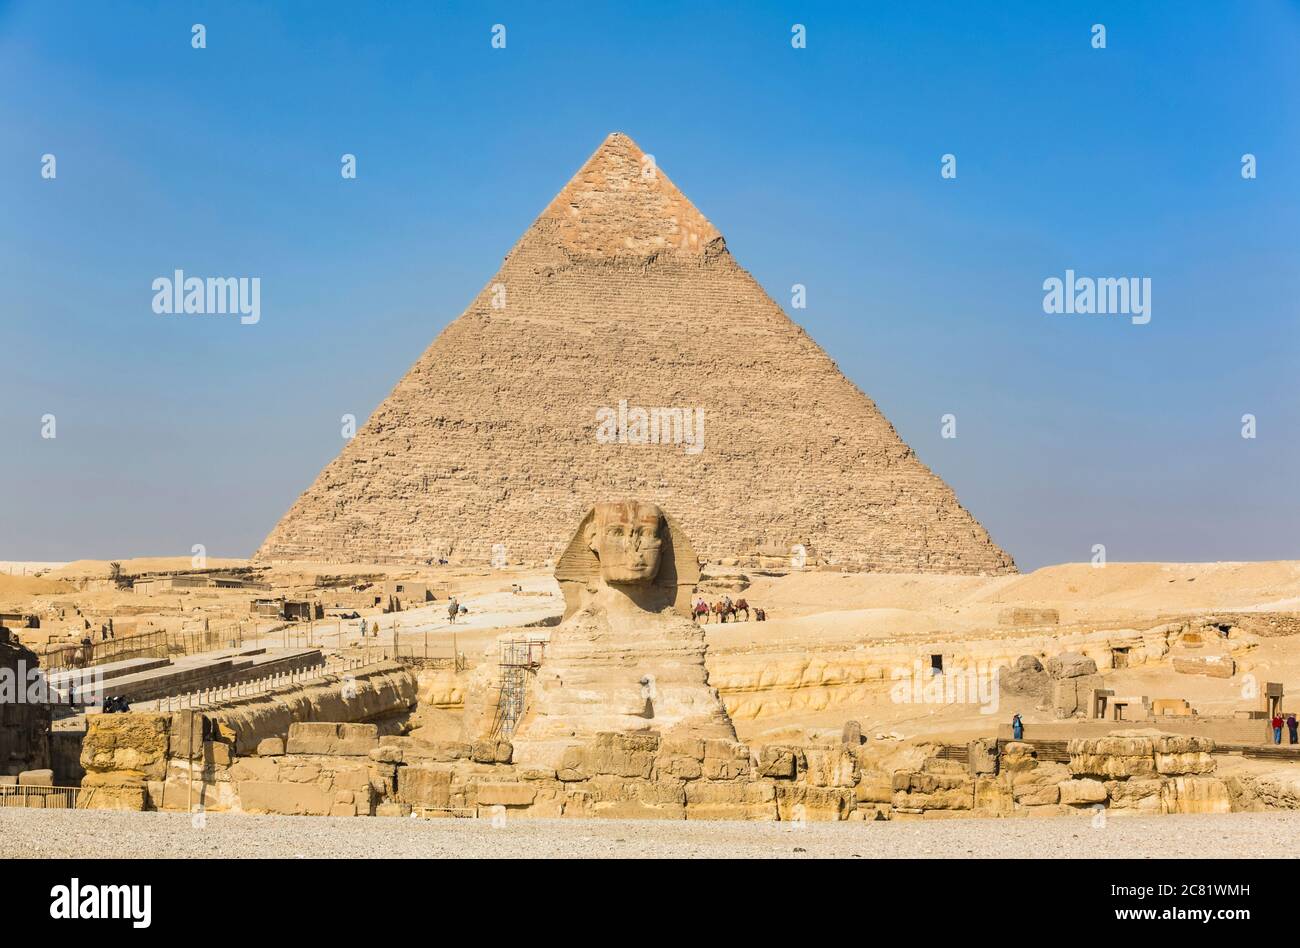 Grand Sphinx de Gizeh, Pyramide de Khafre (arrière-plan), complexe de la pyramide de Gizeh, site du patrimoine mondial de l'UNESCO; Gizeh, Égypte Banque D'Images